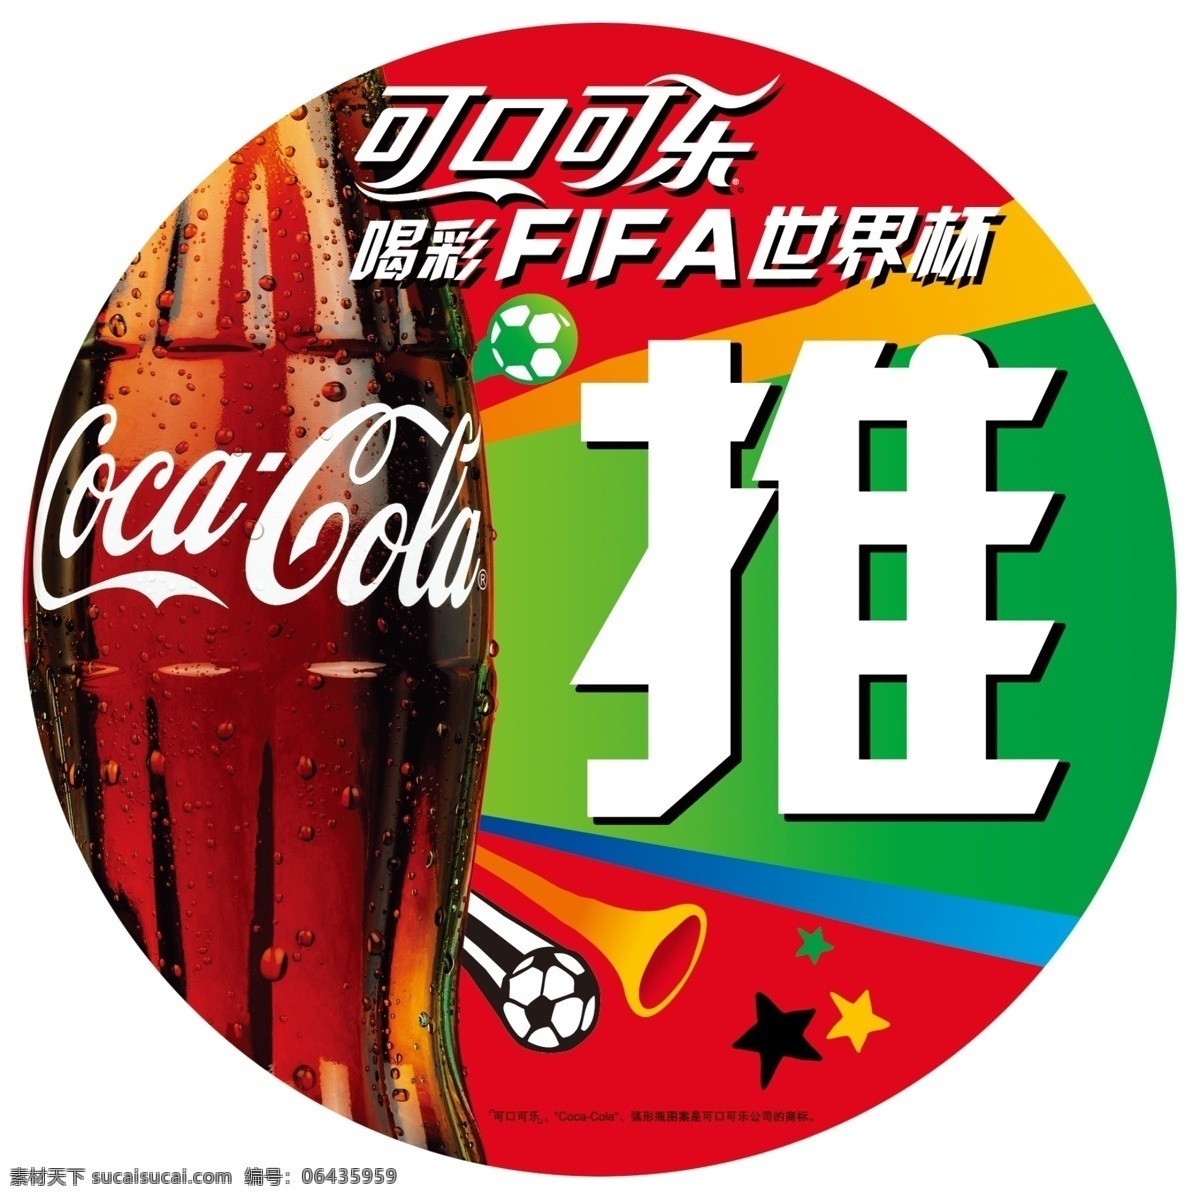 可口可乐 推拉门 贴 可口 可乐 推 拉 门贴 饮料 fifa 世界杯 足球 瓶子 线条 五星 广告设计模板 源文件